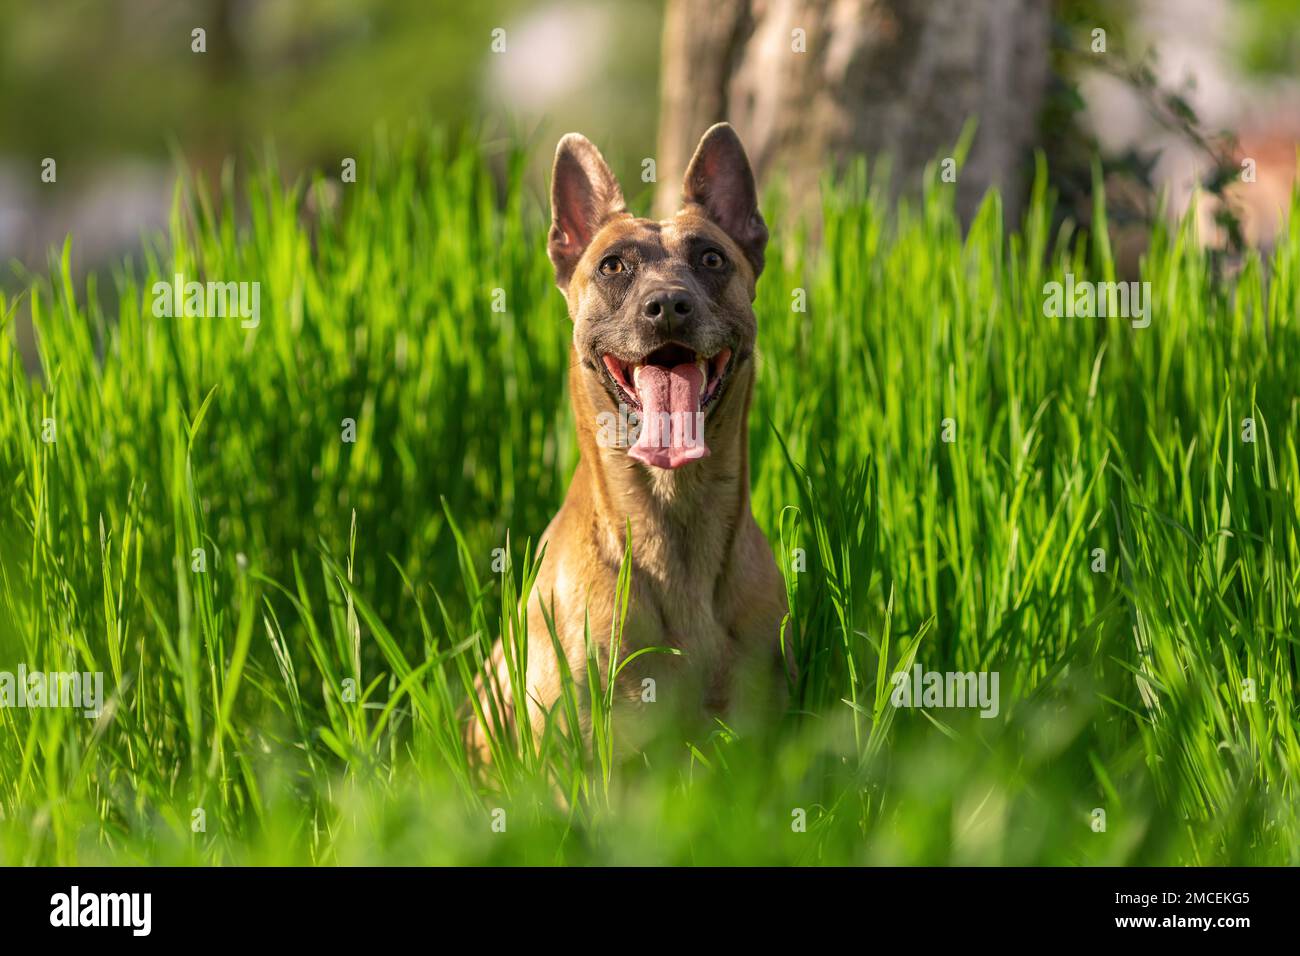 Divertente cane sorridente di razza belga malinois seduto in erba verde al sole all'aperto Foto Stock